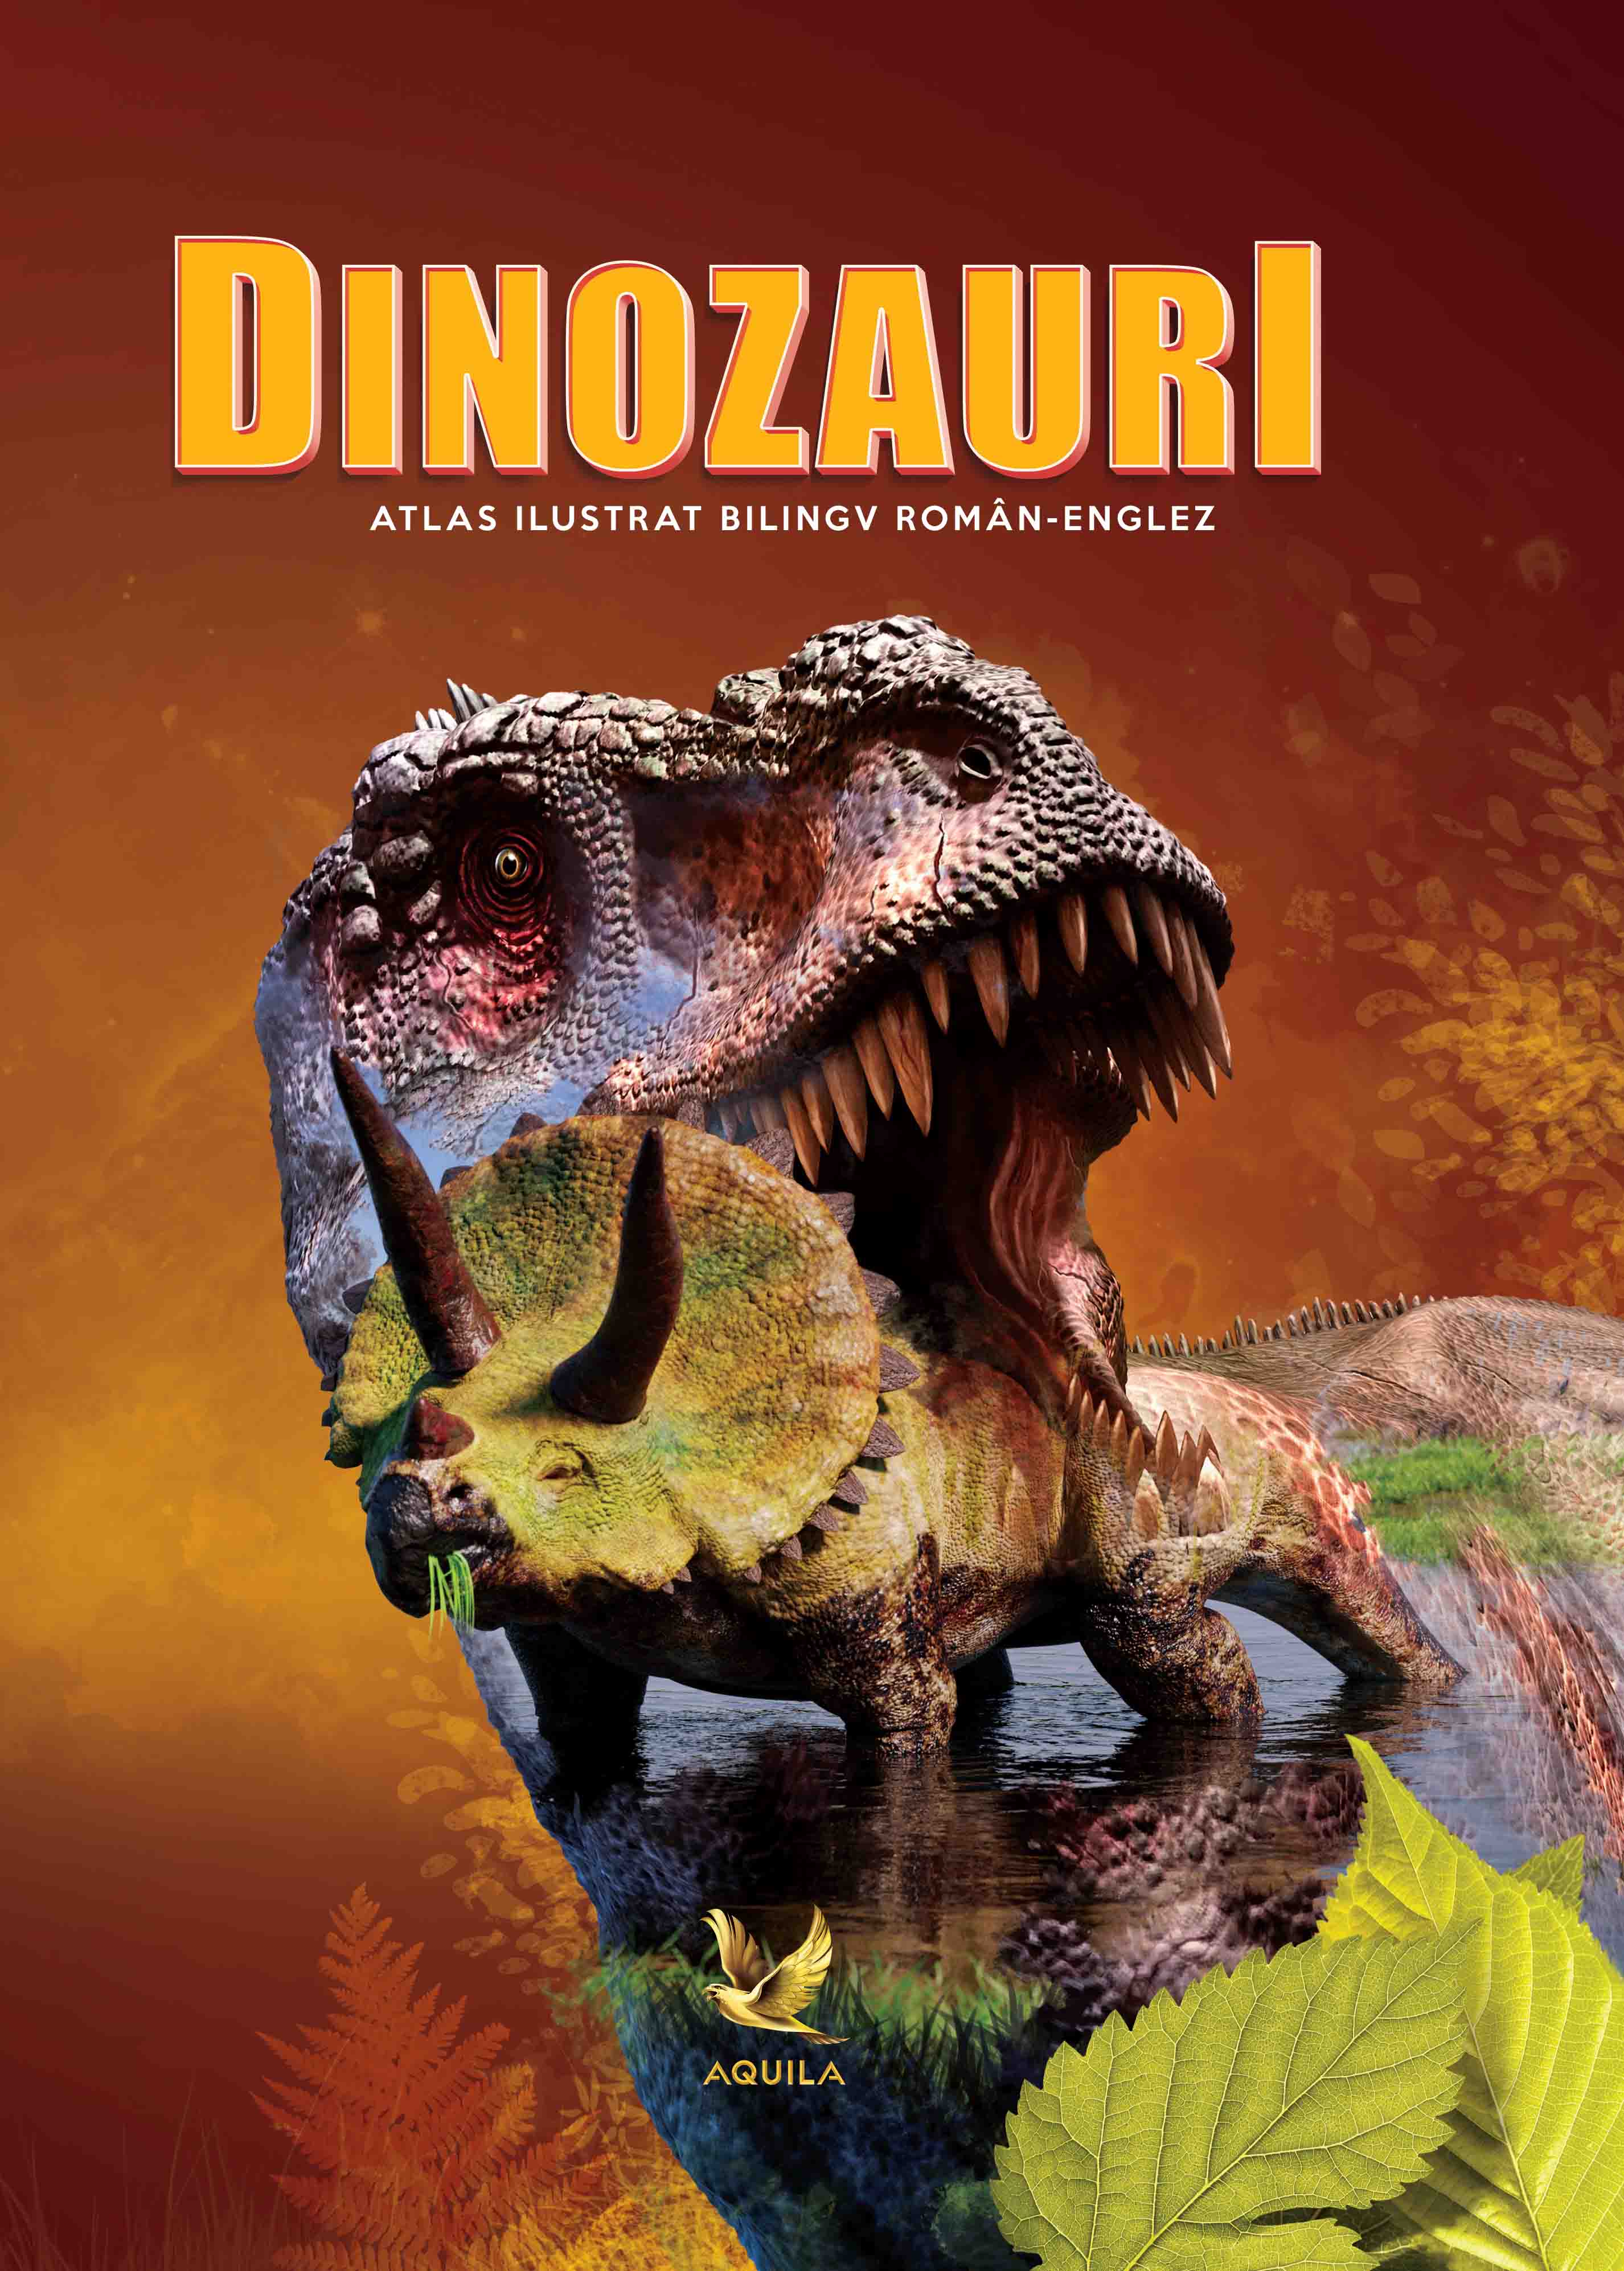 PDF Dinozauri. Atlas ilustrat bilingv roman-englez | Aquila Carte